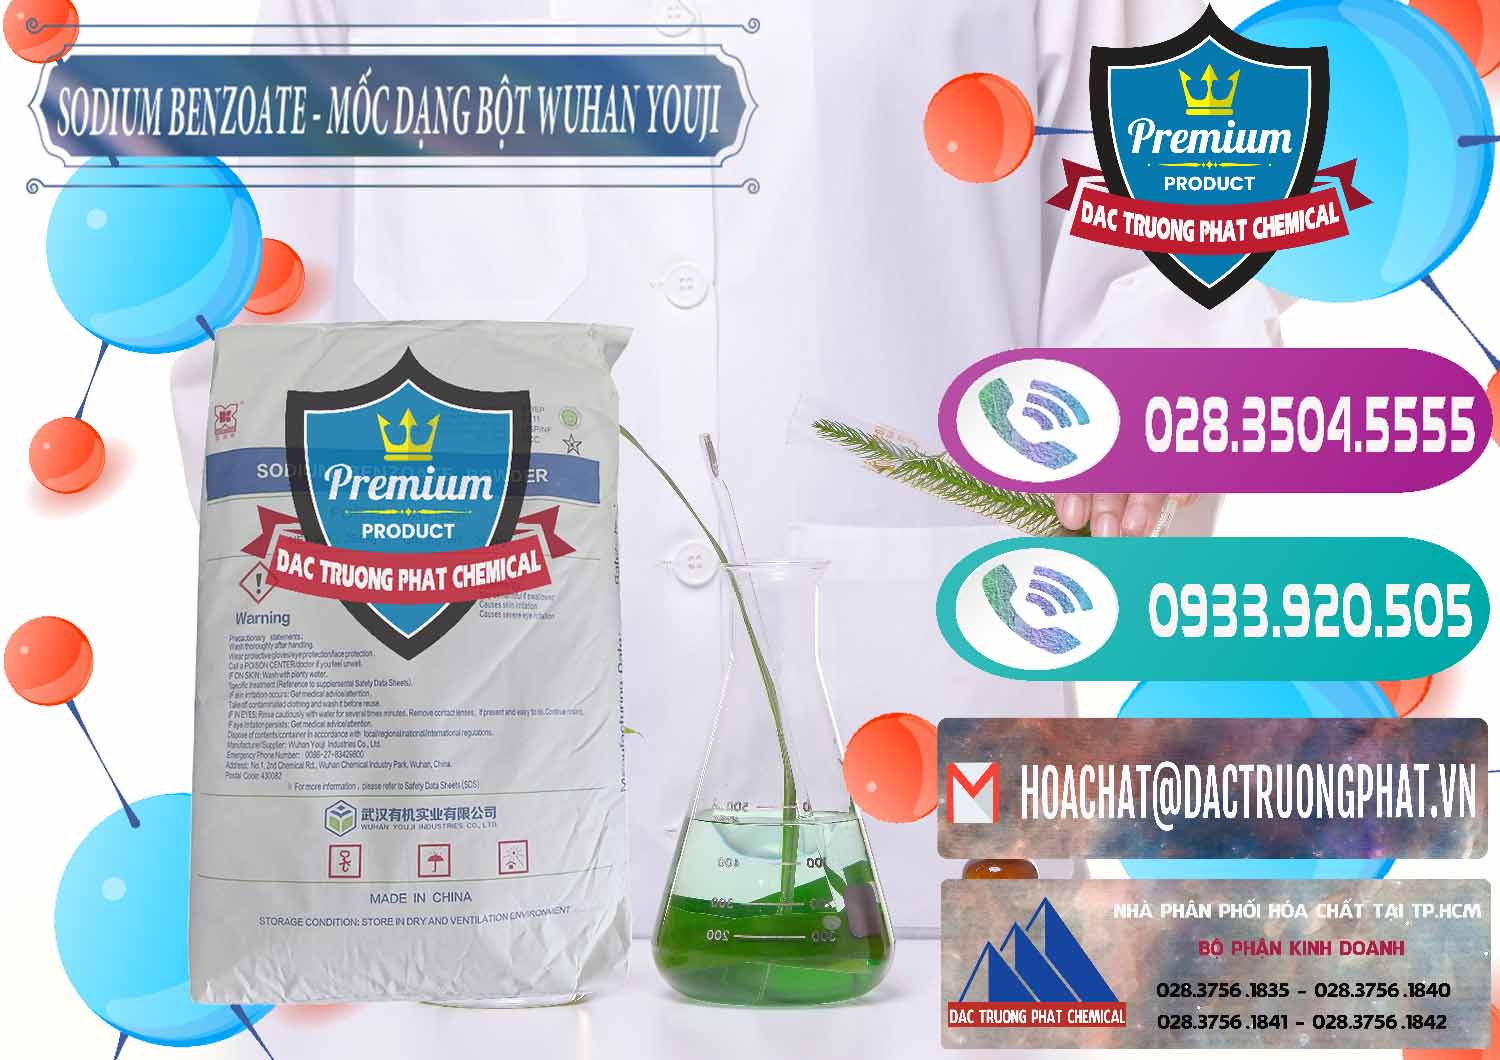 Đơn vị chuyên bán & phân phối Sodium Benzoate - Mốc Dạng Bột Food Grade Wuhan Youji Trung Quốc China - 0275 - Công ty chuyên phân phối _ cung ứng hóa chất tại TP.HCM - hoachatxulynuoc.com